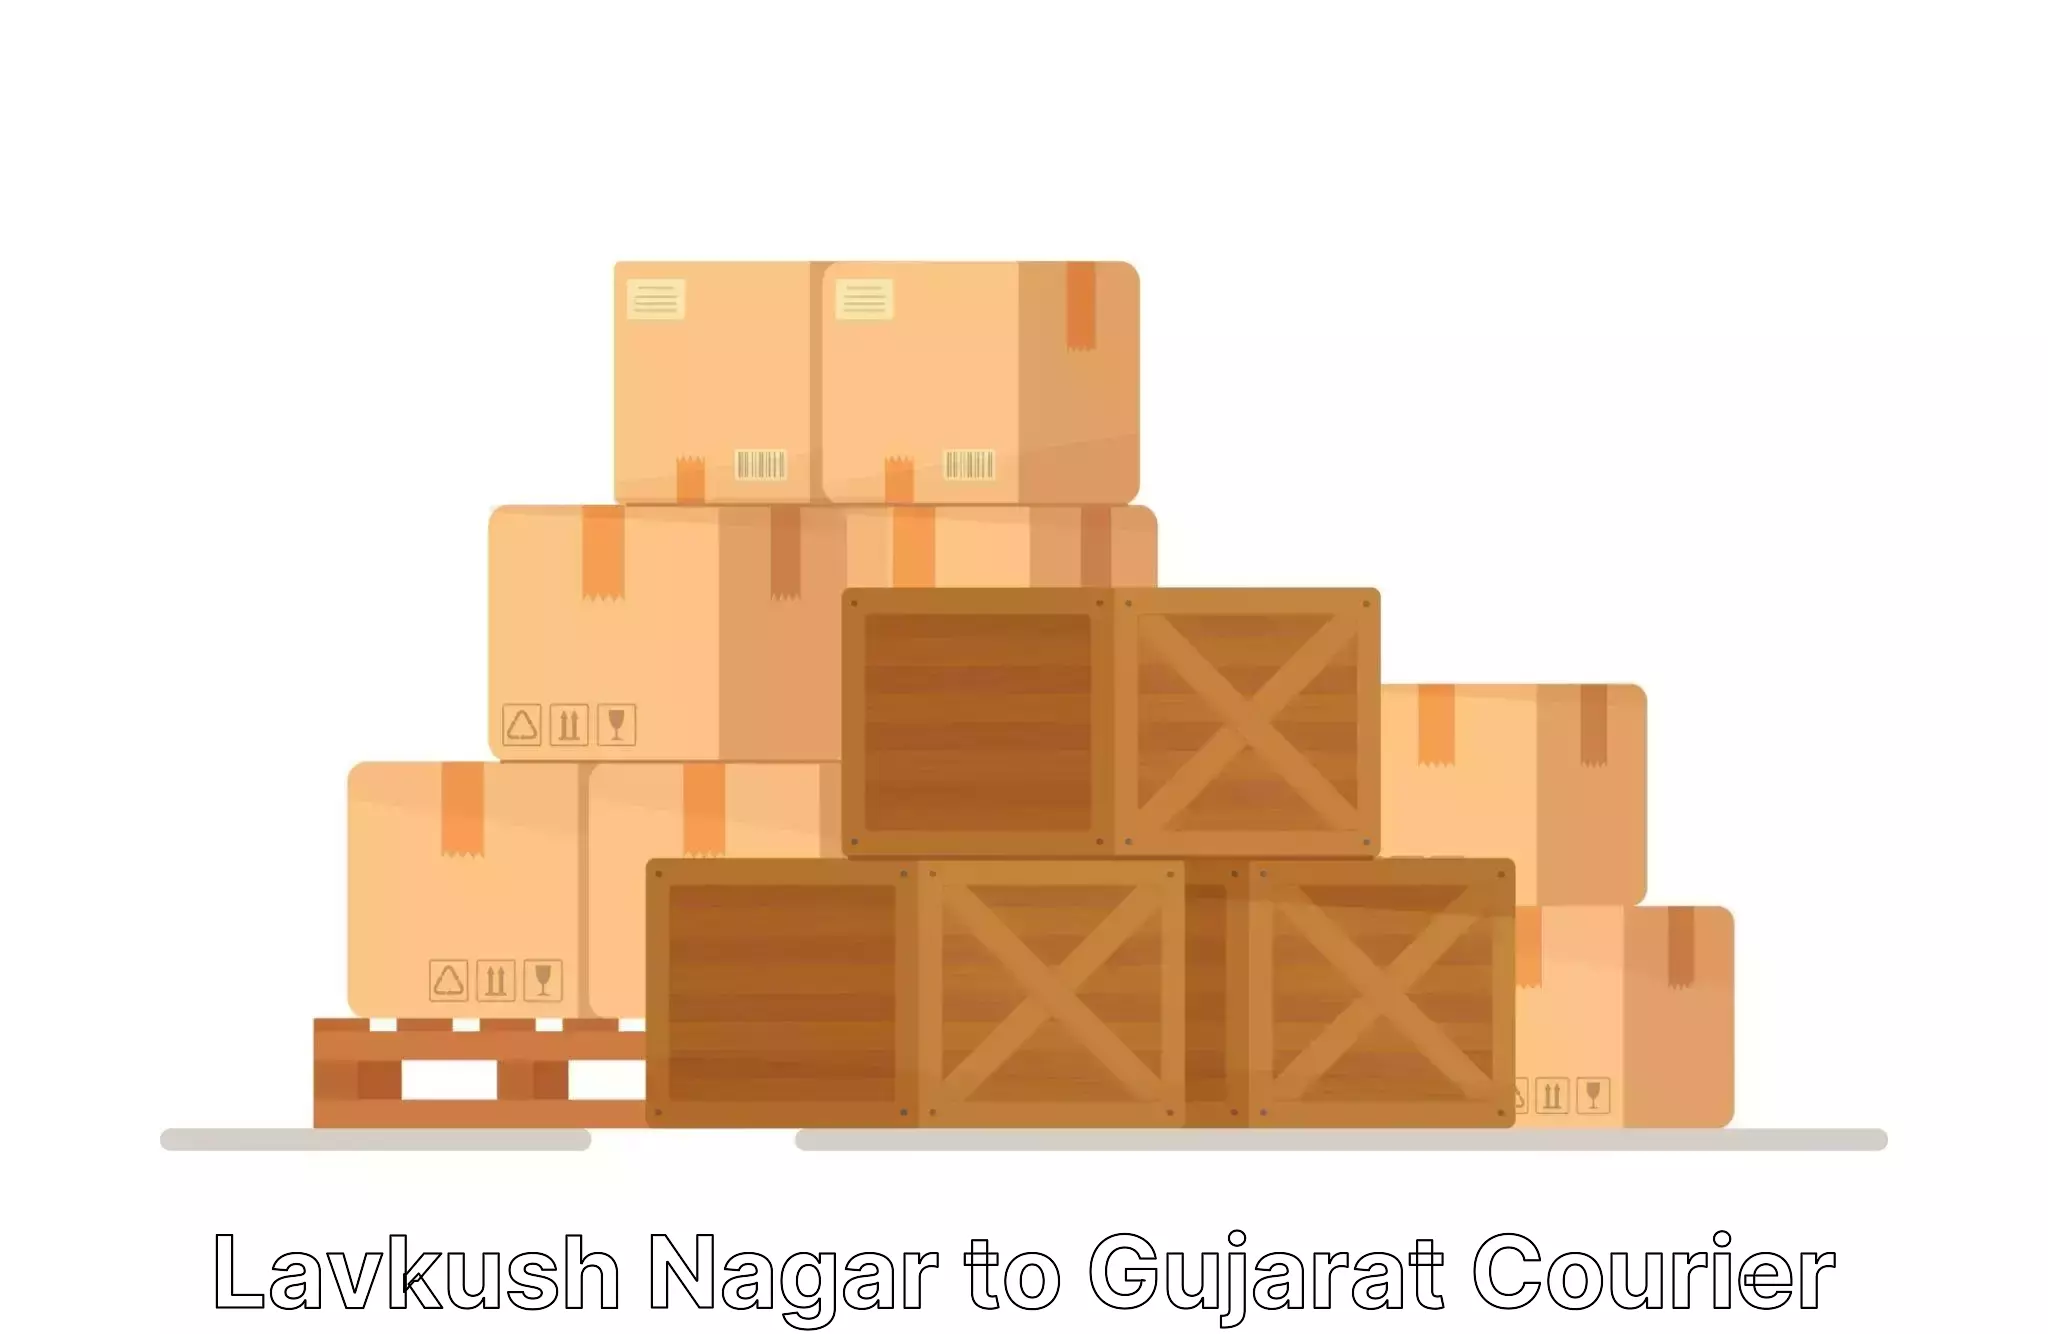 Home shifting experts Lavkush Nagar to Gujarat